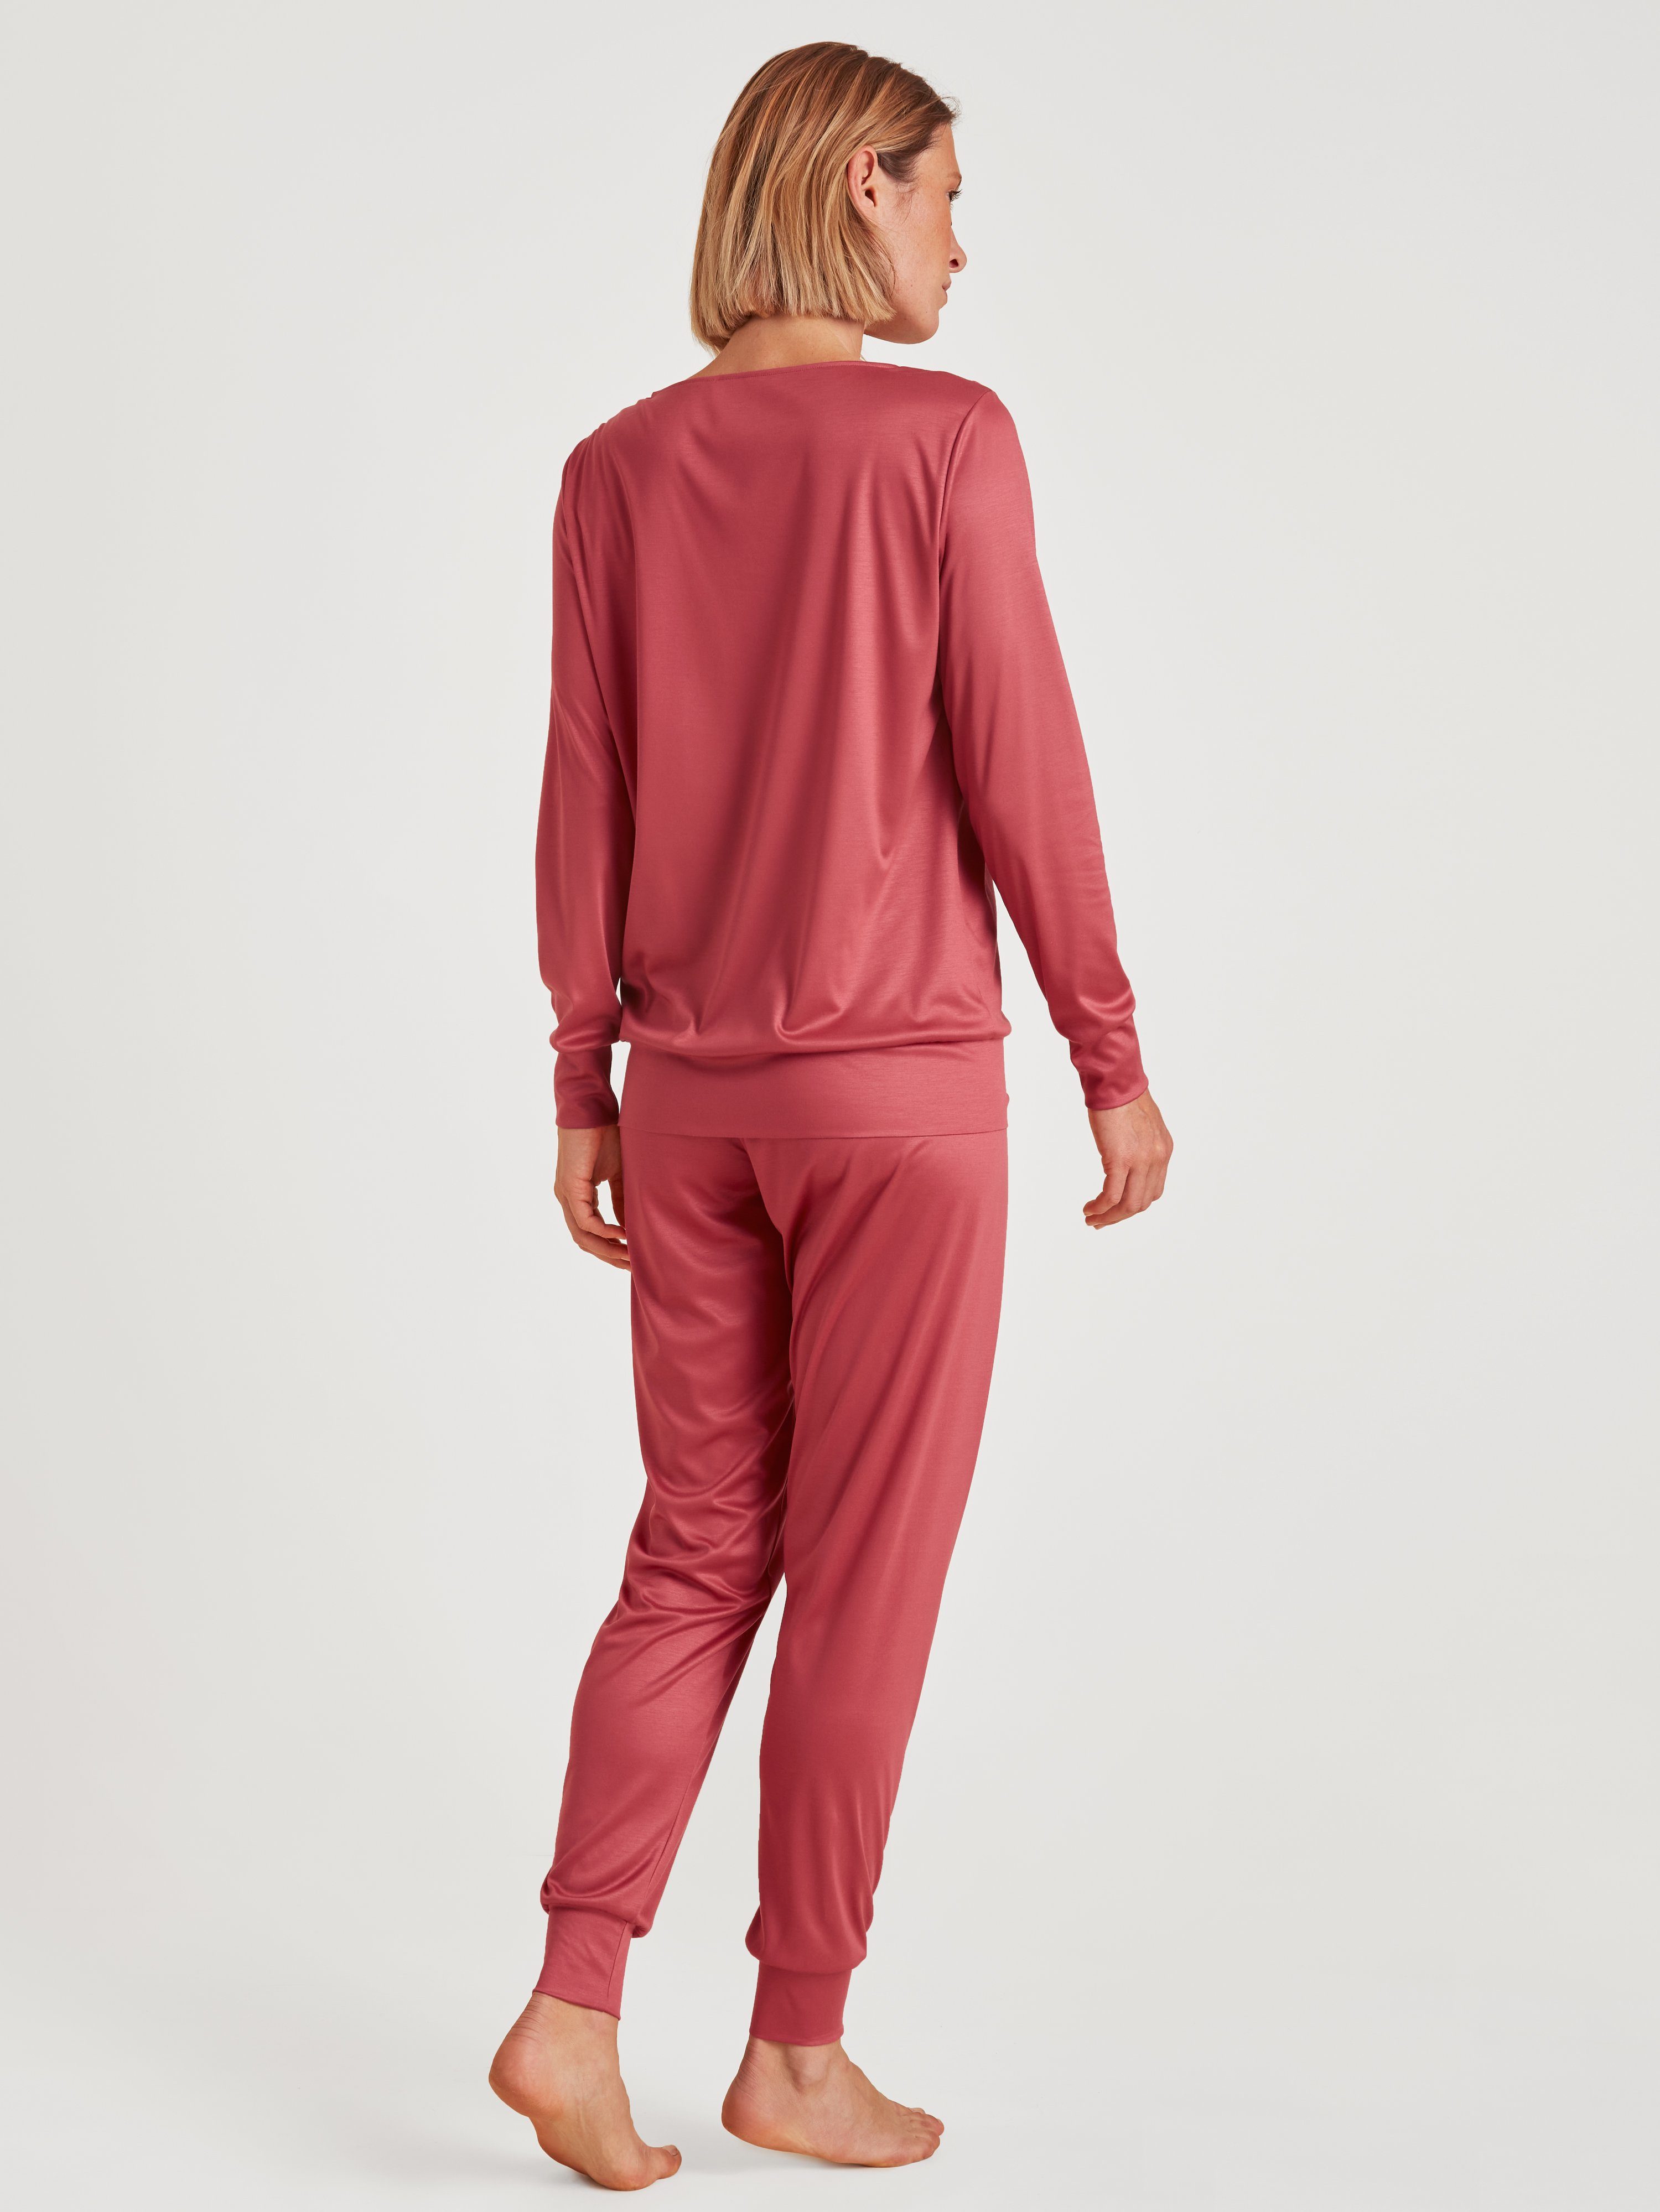 CALIDA Pyjama Calida Damen tlg., red Bündchenpyjama 1 (1 43254 Stück) 1 pomegranate Stück